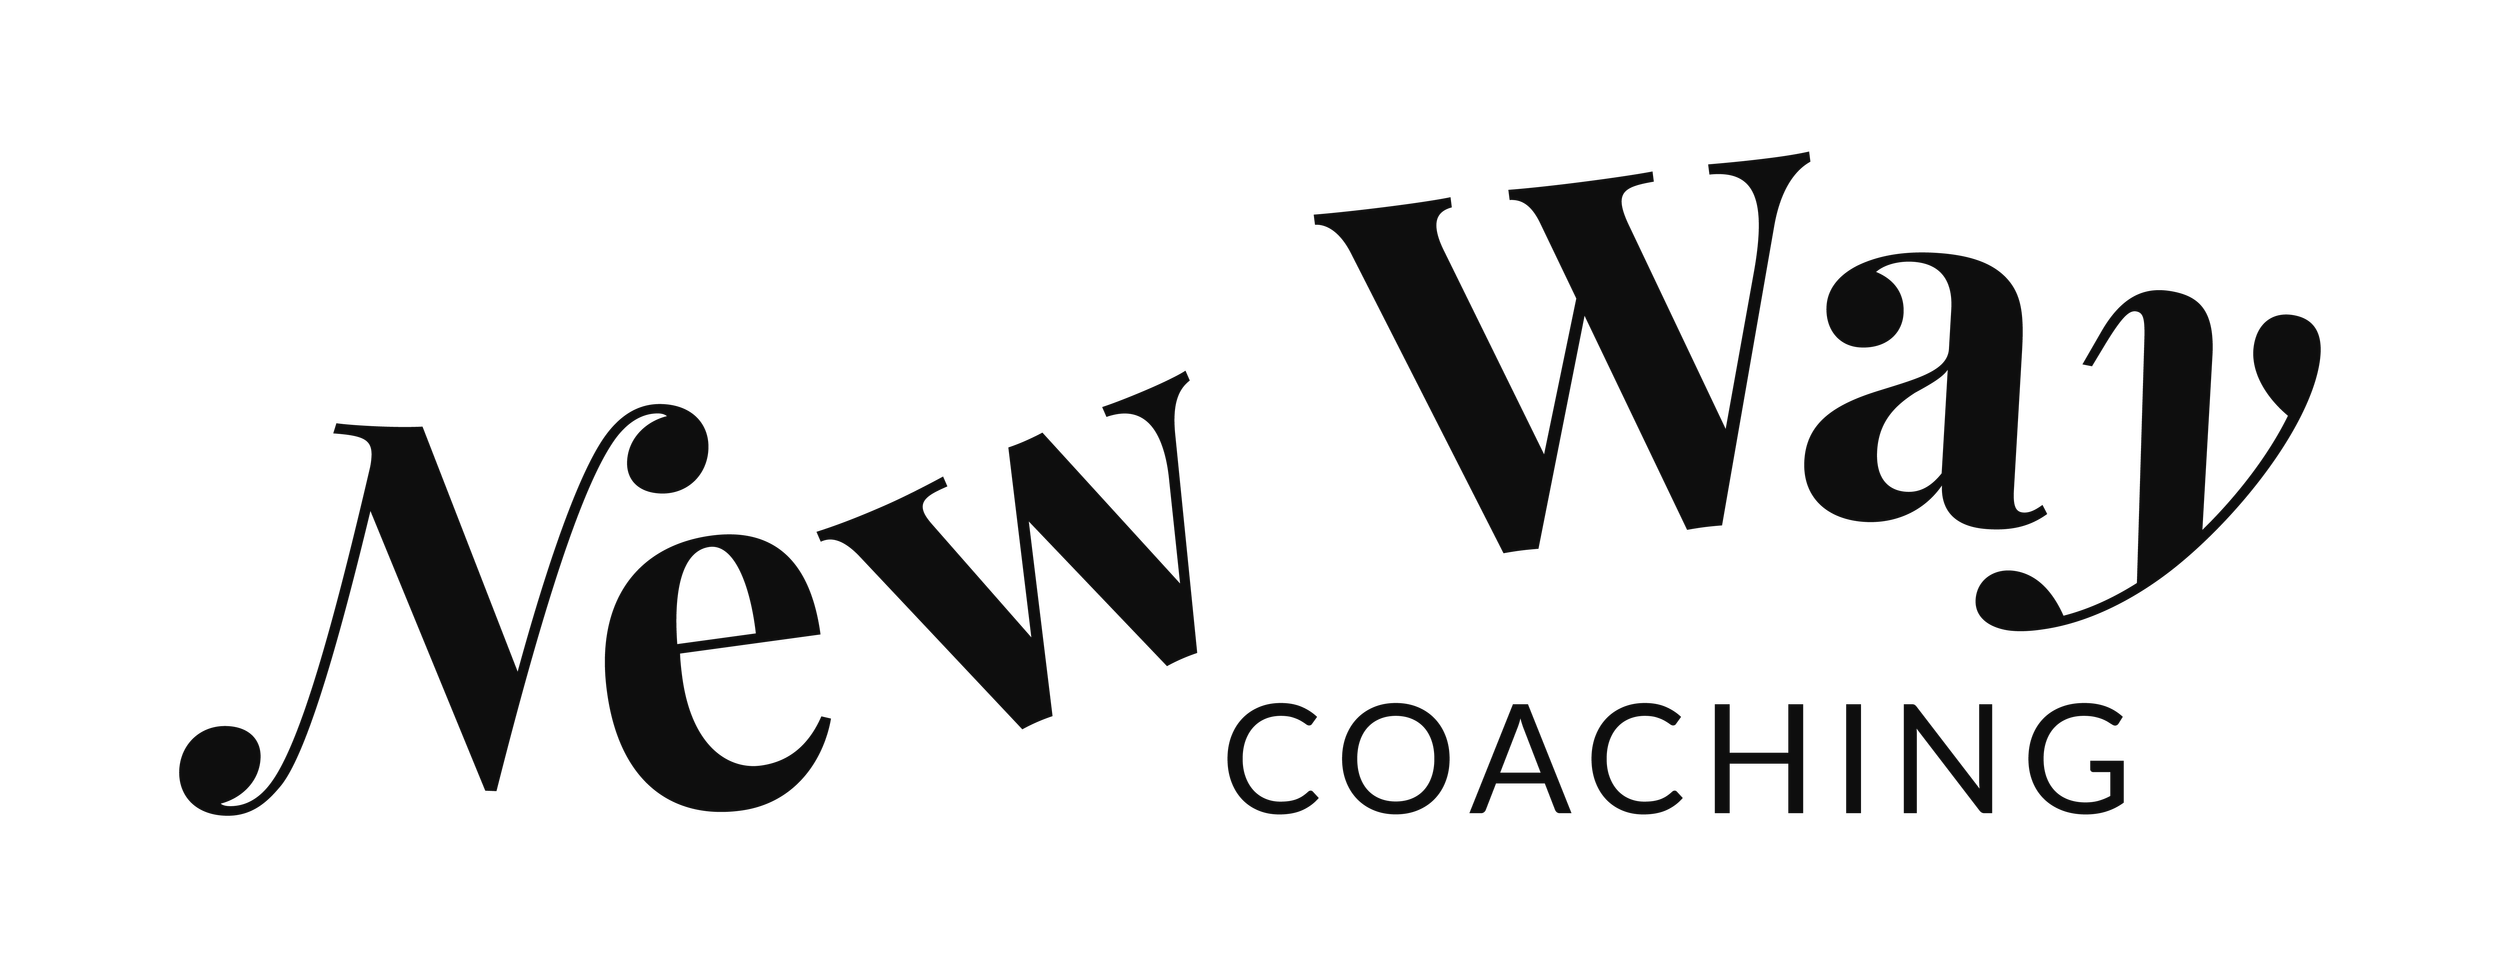 4 New Way Coaching logo.png